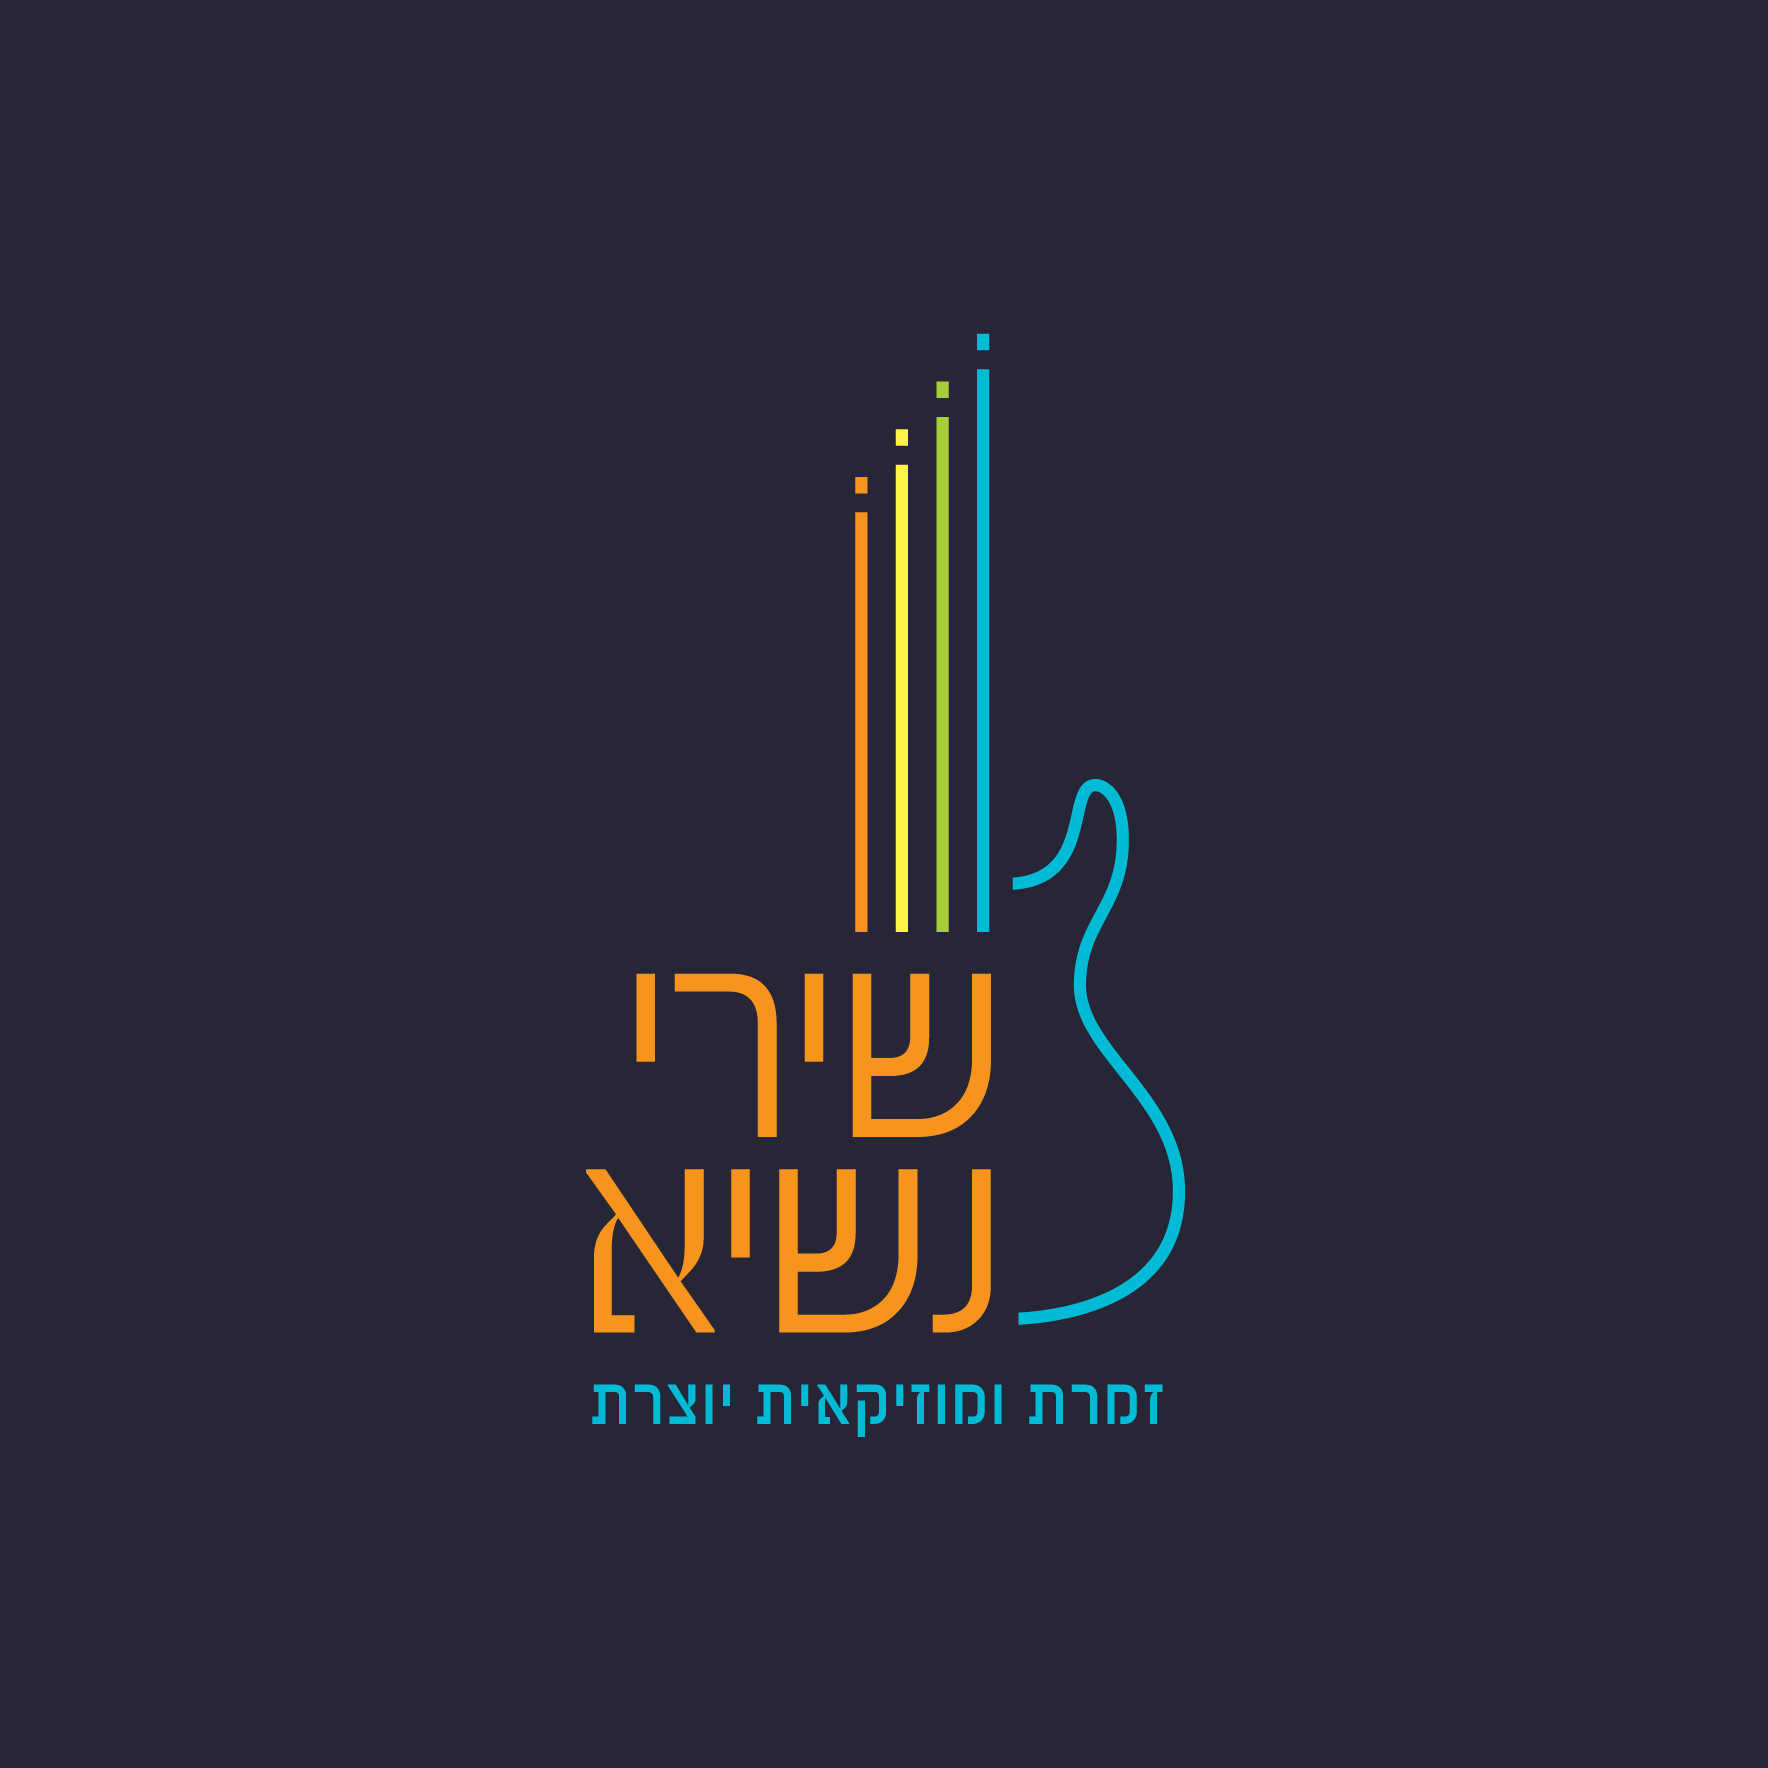 לוגו לזמרת ומוזיקאית